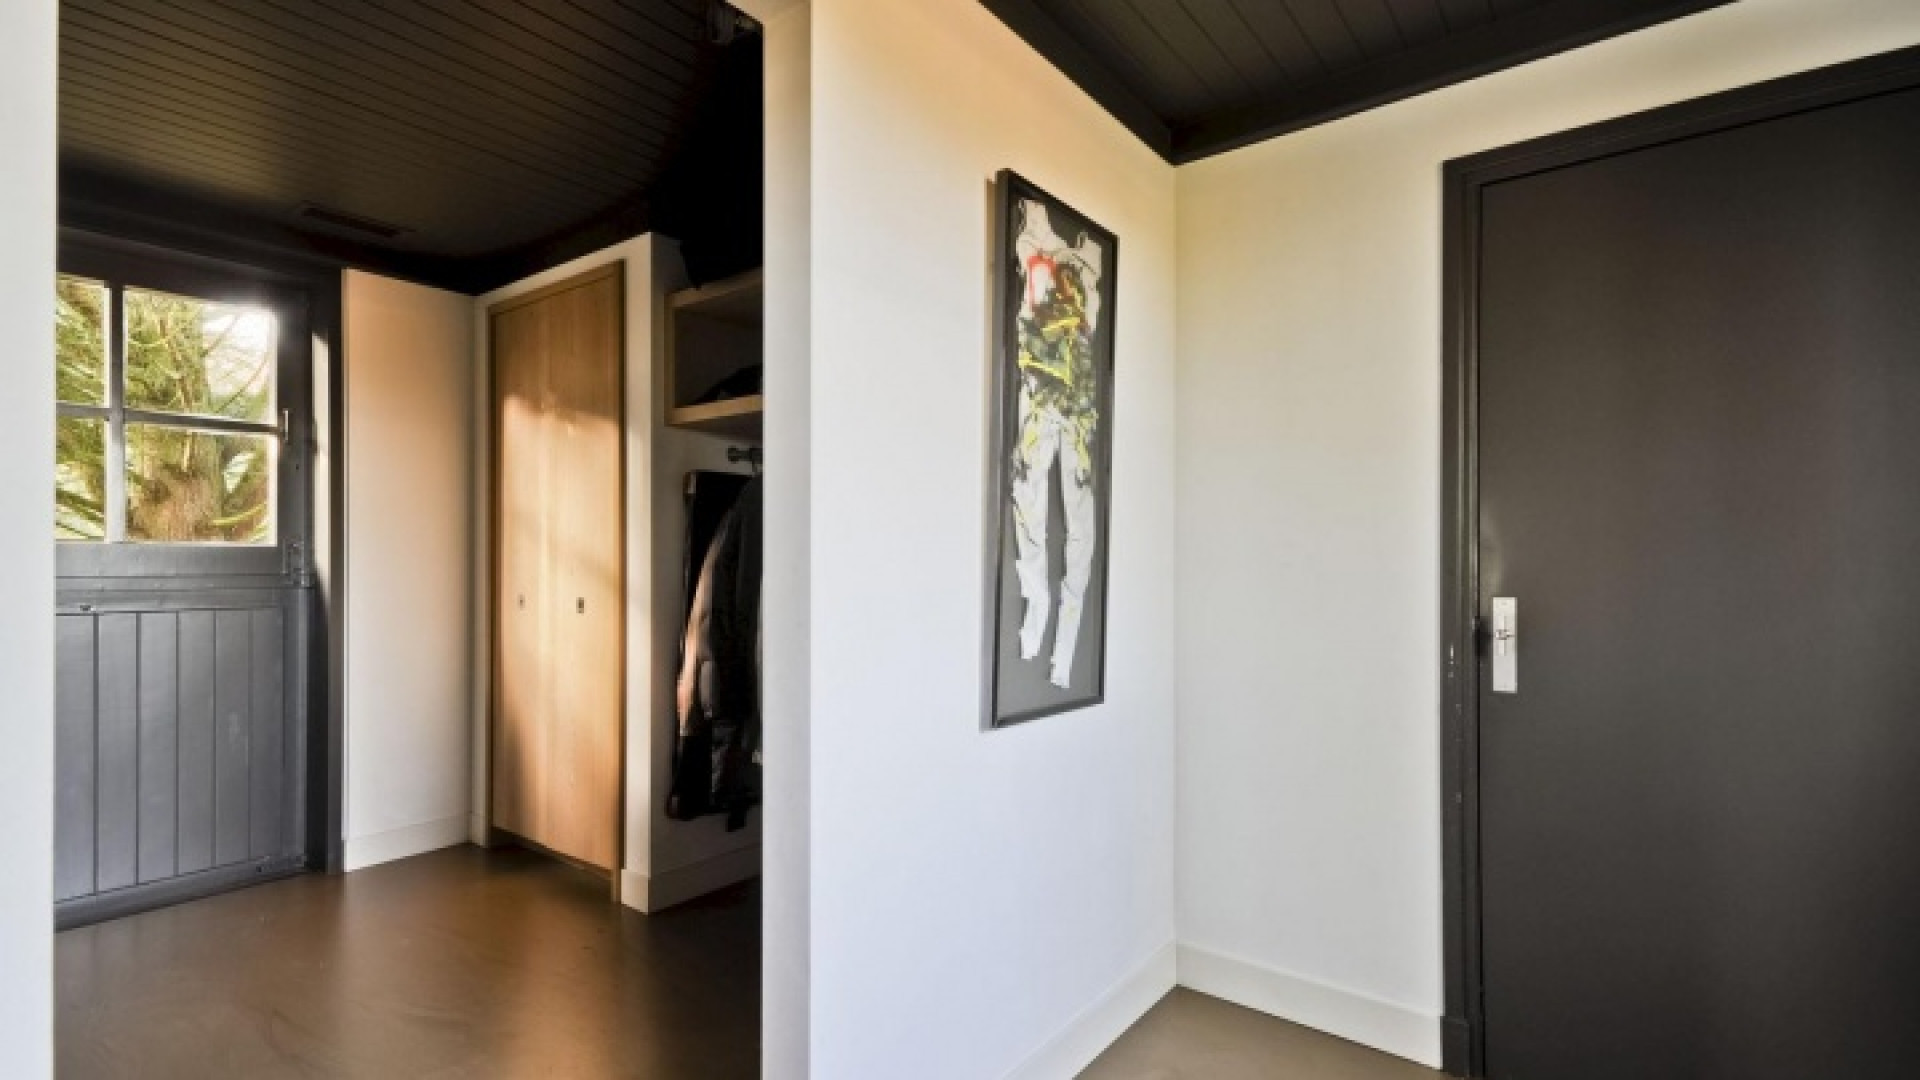 Binnenkijken in het totaal door ontwerper Piet Boon gerestylde huis van Henny Huisman. Zie foto's 15